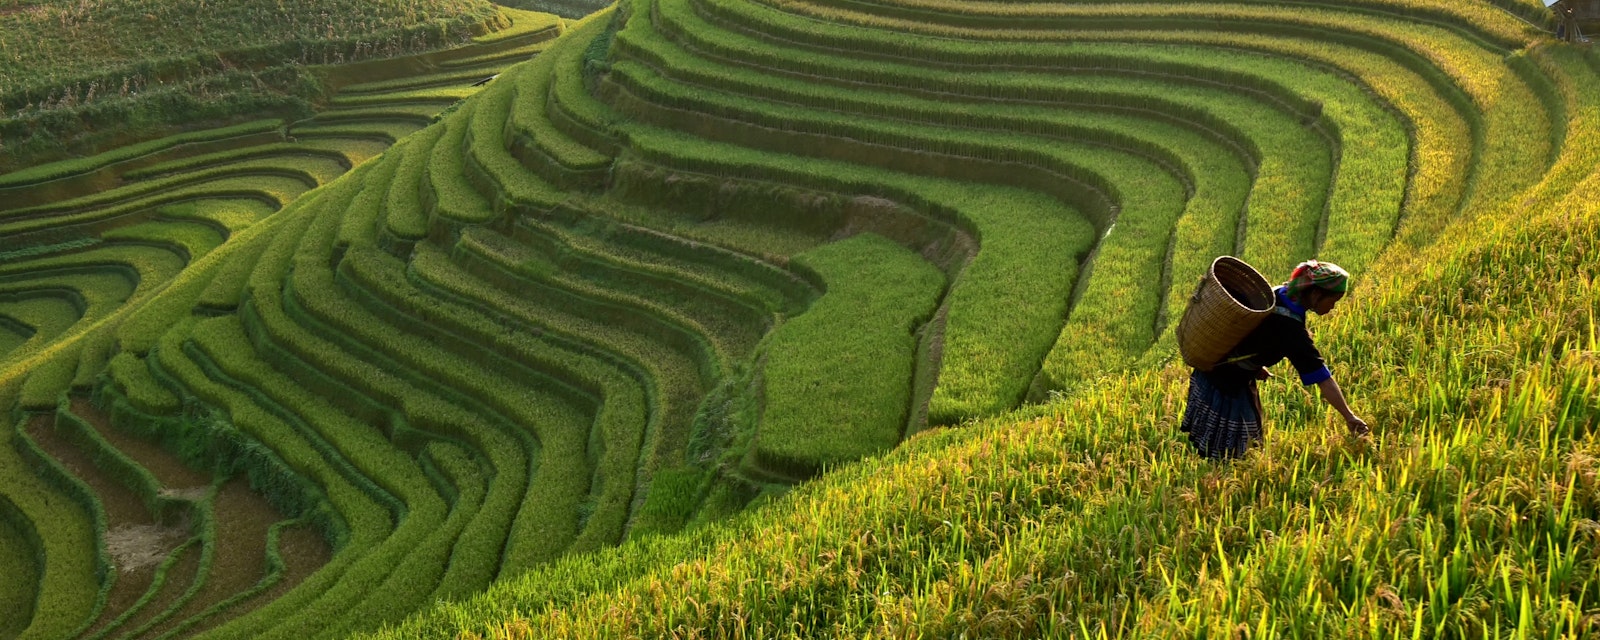 Morning,Light,Of,Rice,Field,On,Terrace,In,Vietnam,Landscape.